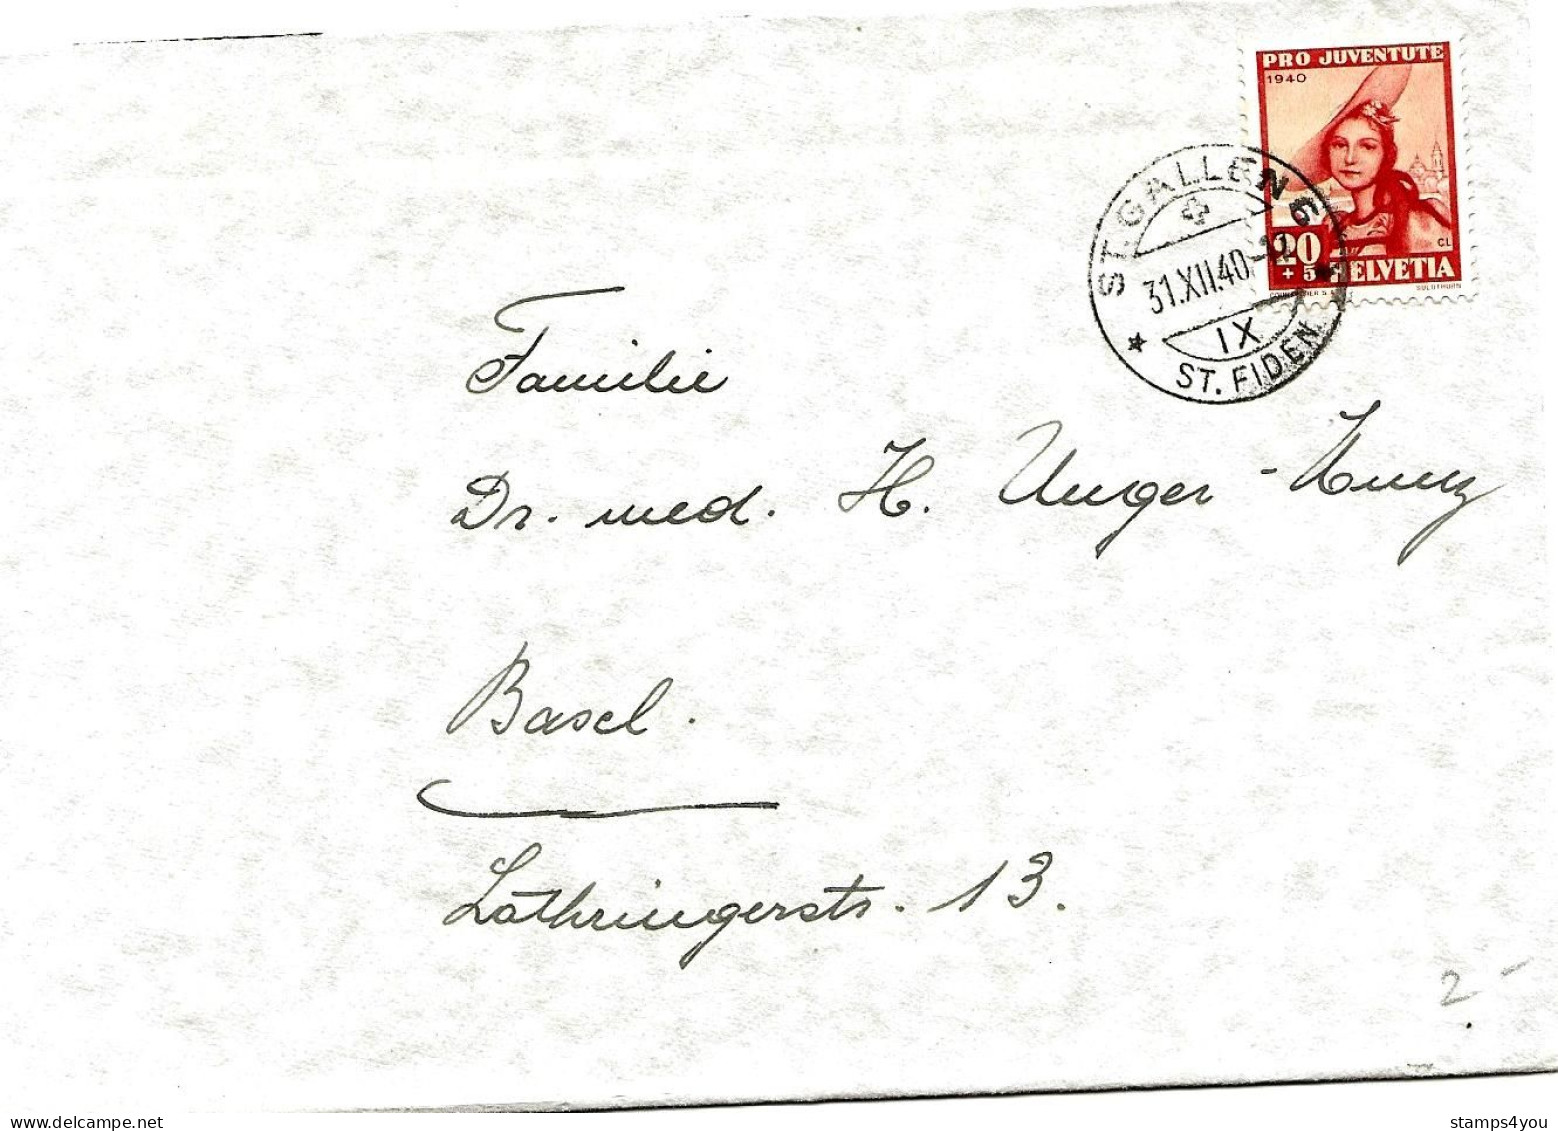 79 - 89 - Enveloppe Avec Timbre Pro Juventute 1940 - Cachet à Date St Gallen 31.12.40. - Lettres & Documents